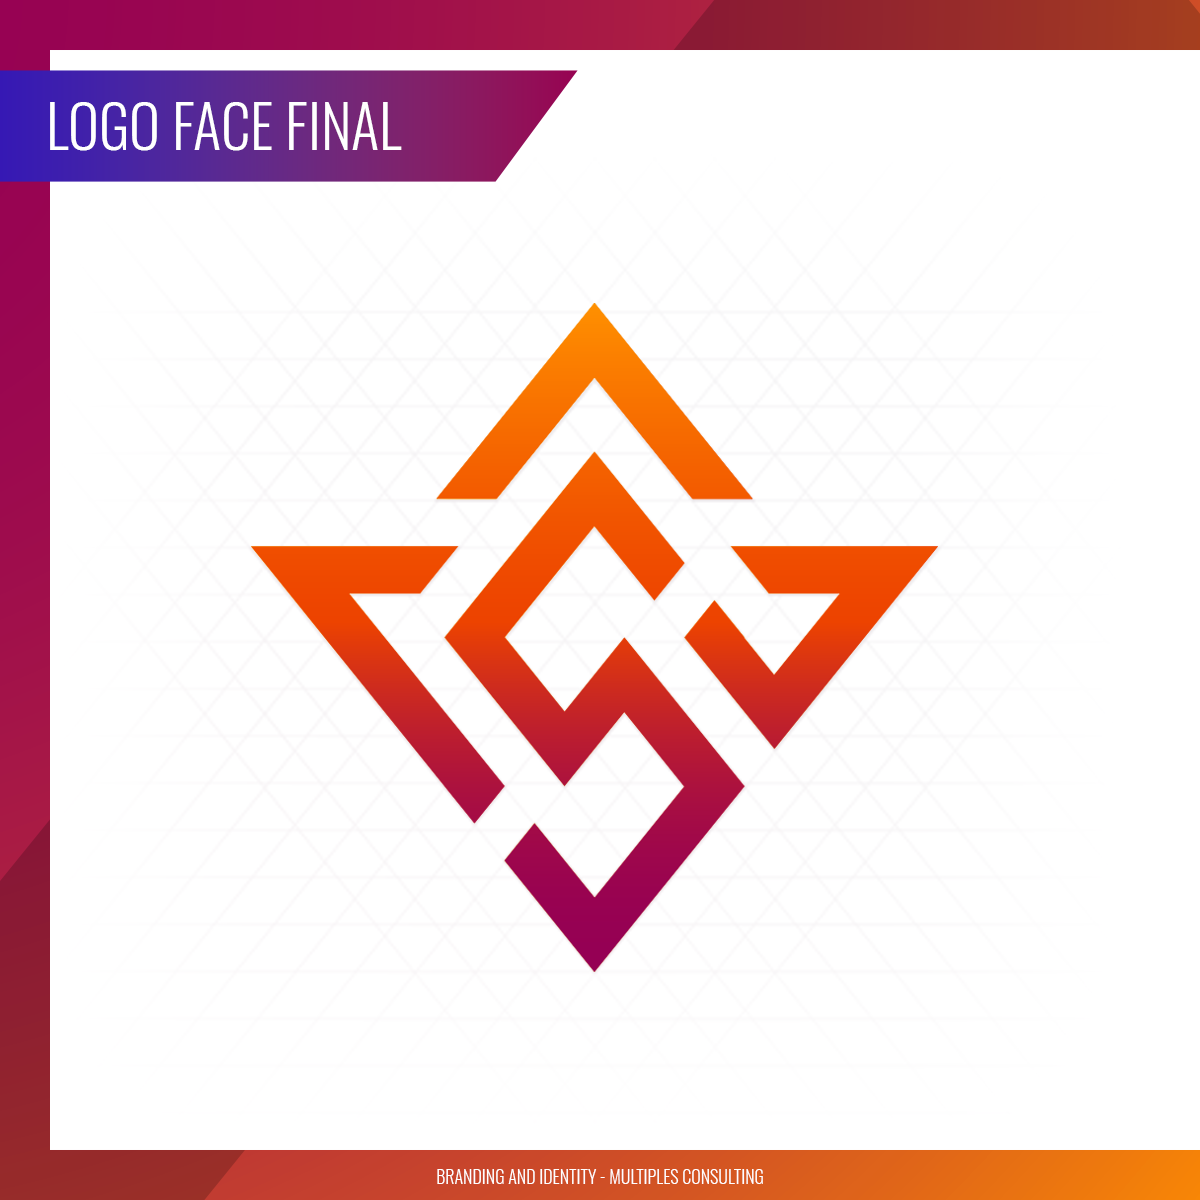 Final-Logo-Face